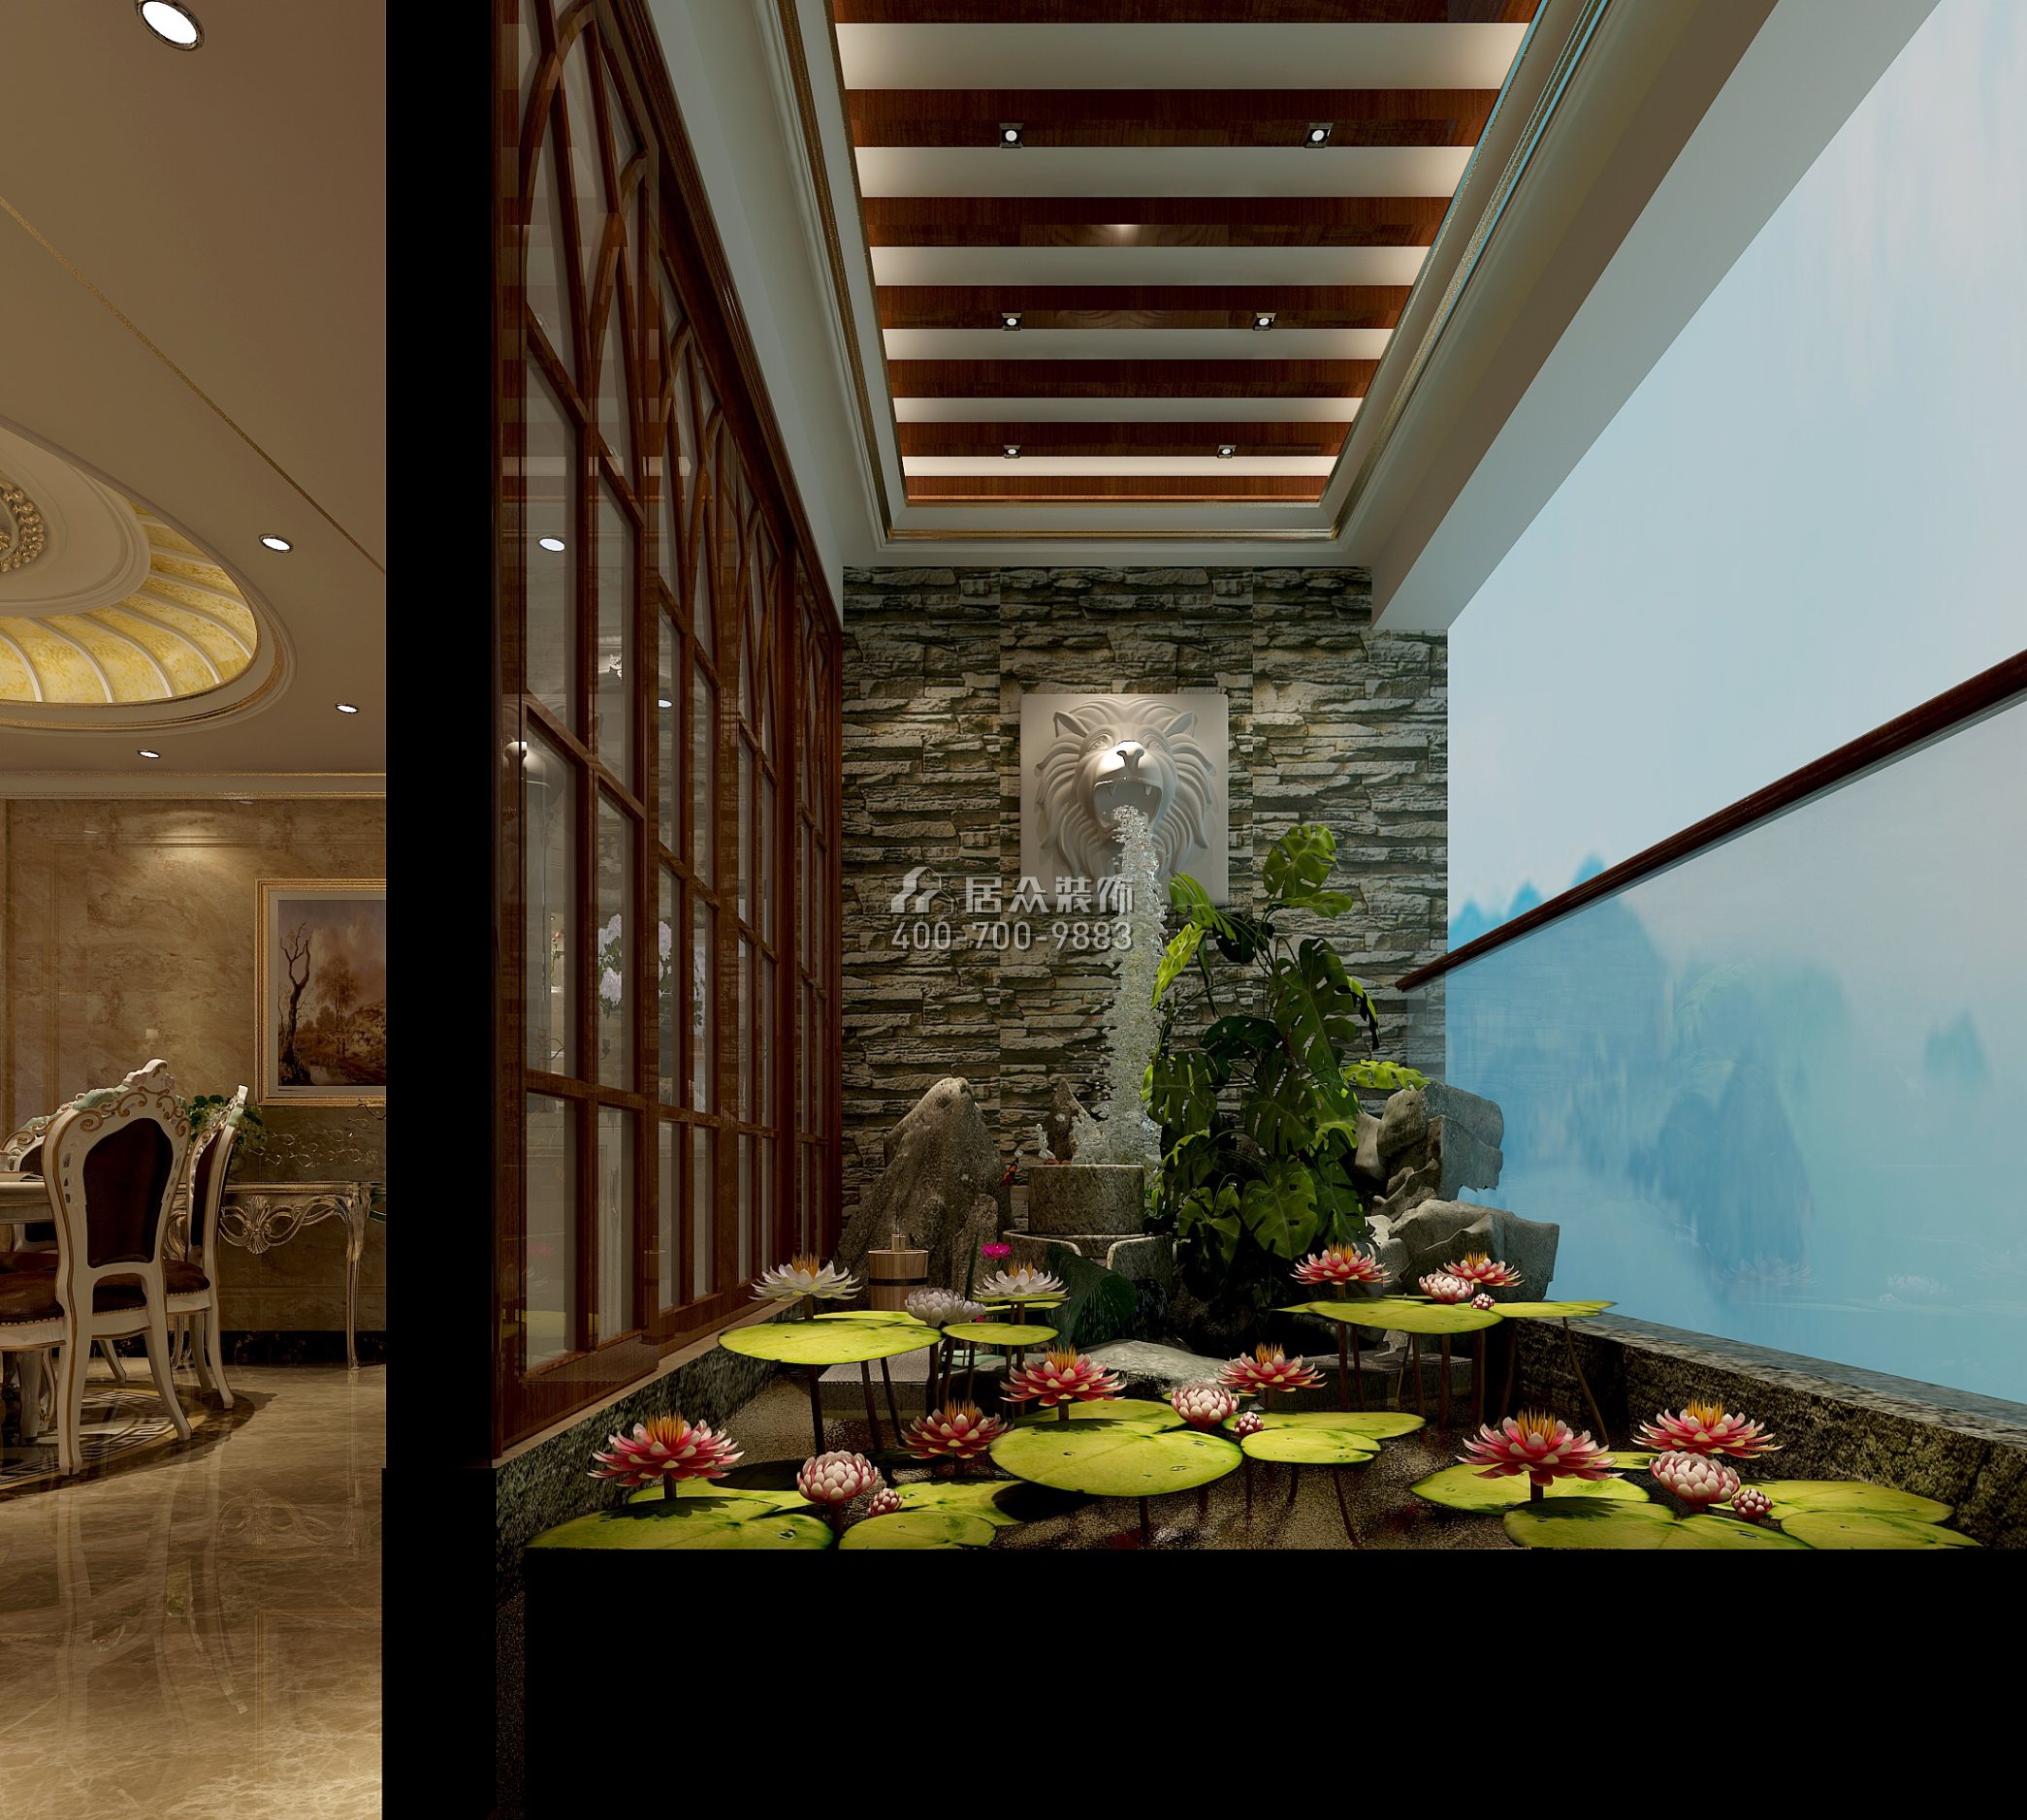 雅居乐花冠集192平方米欧式风格平层户型阳台装修效果图